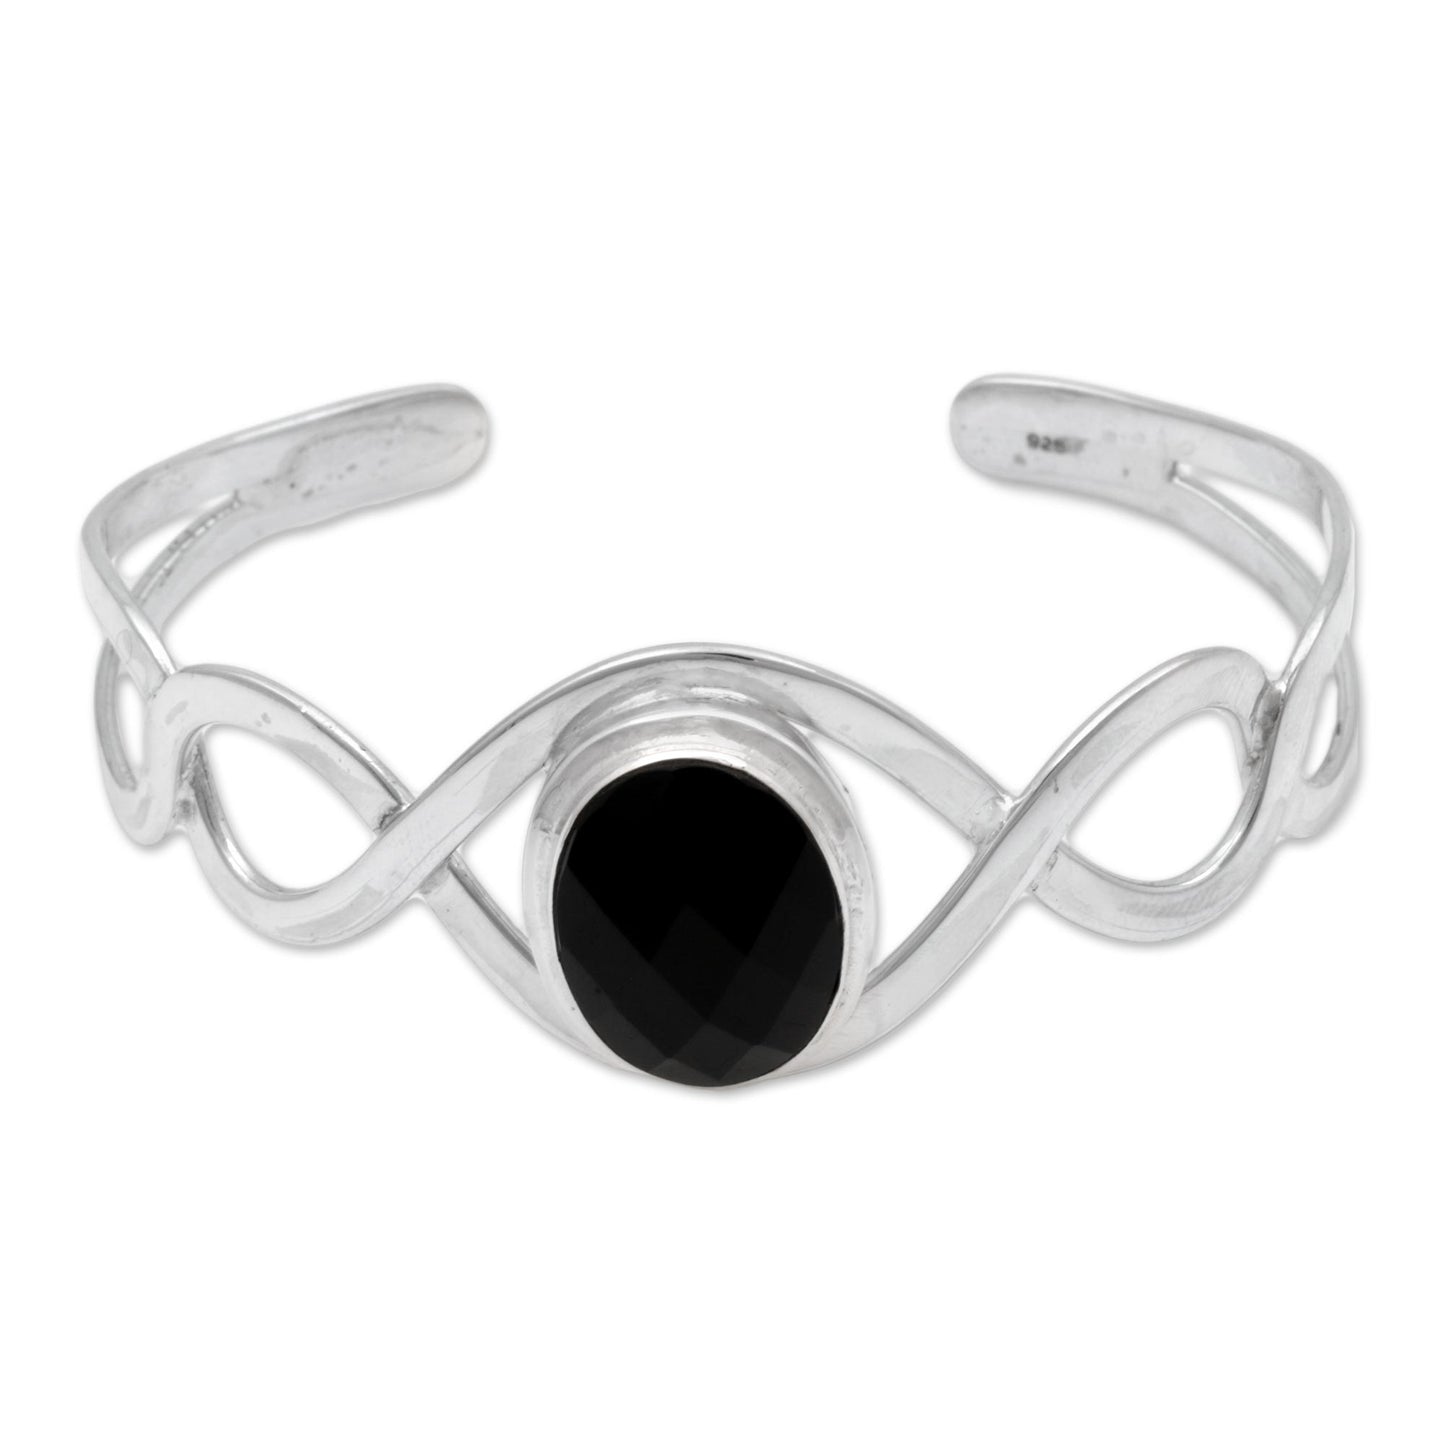 Double Helix Onyx & Silver Cuff Bracelet